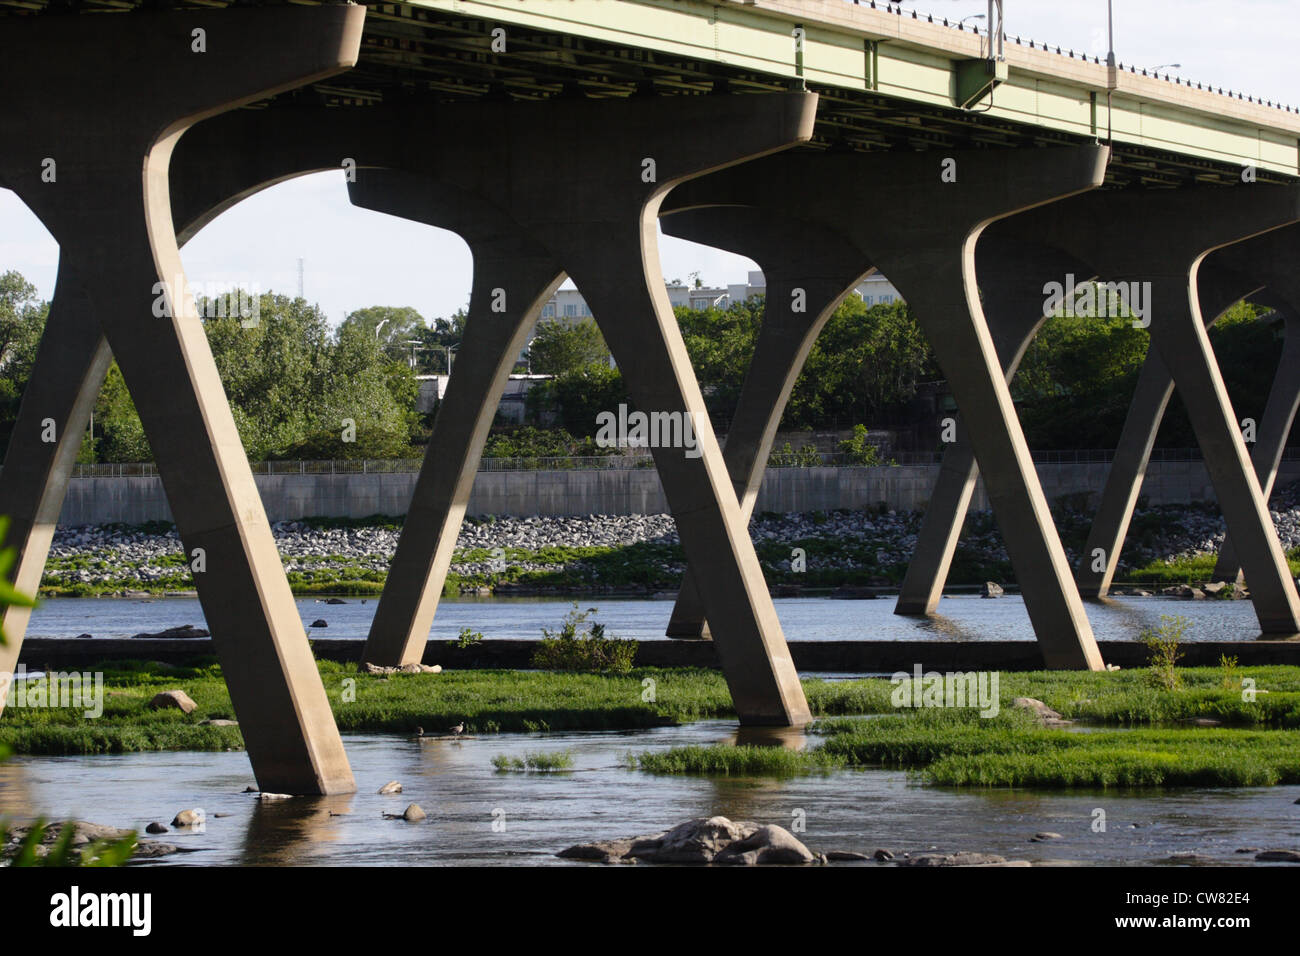 El Manchester puente sobre el río James en Richmond, Virginia, EE.UU. Foto de stock